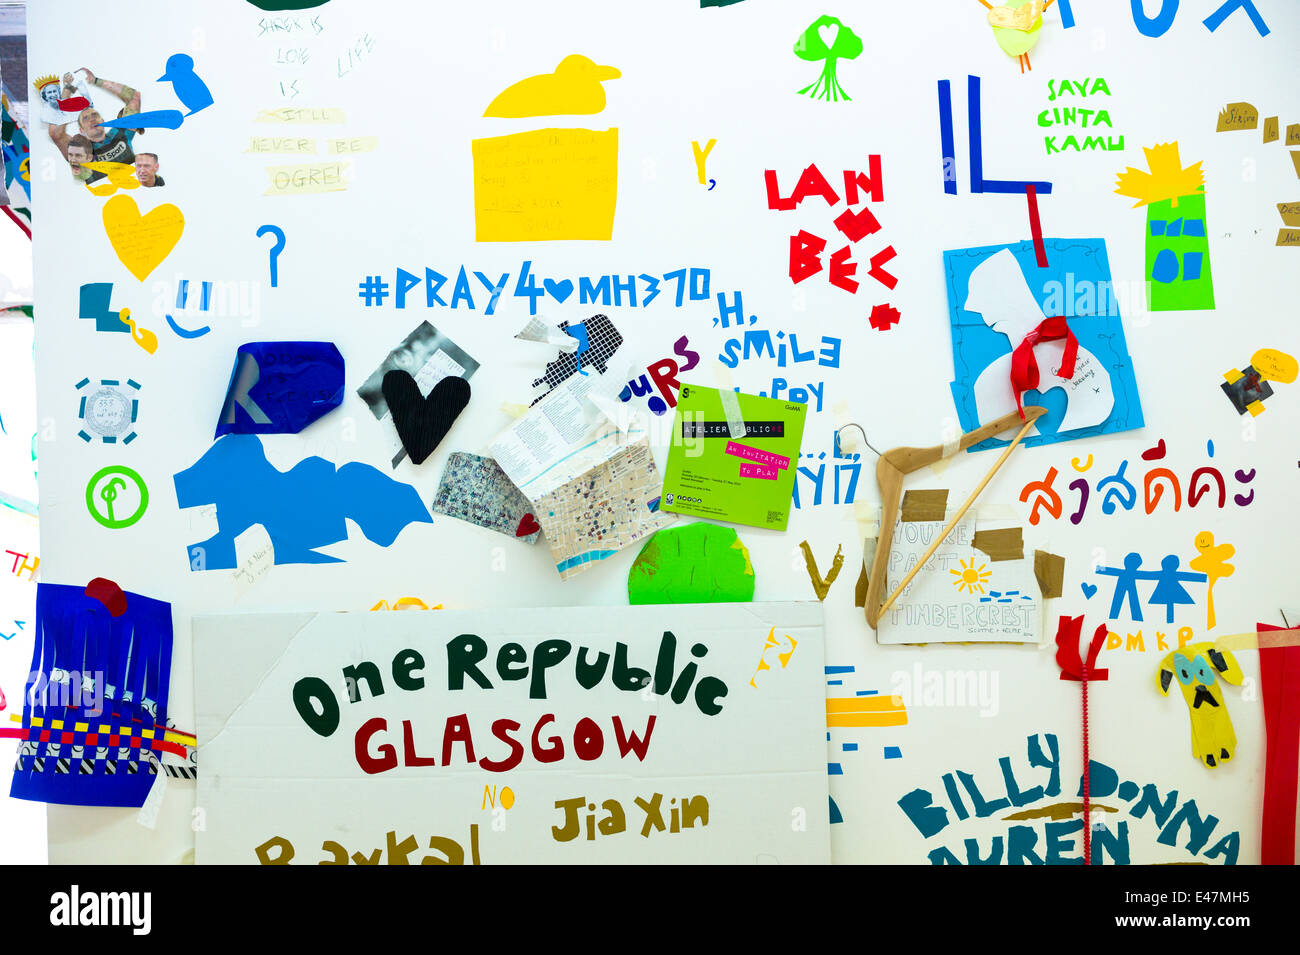 Kunststoff Ausschnitte Atelier Public 2, Ausstellung von Kunstwerken von Mitgliedern der Öffentlichkeit im Gallery of Modern Art, GoMA Glasgow Schottland, Vereinigtes Königreich Stockfoto